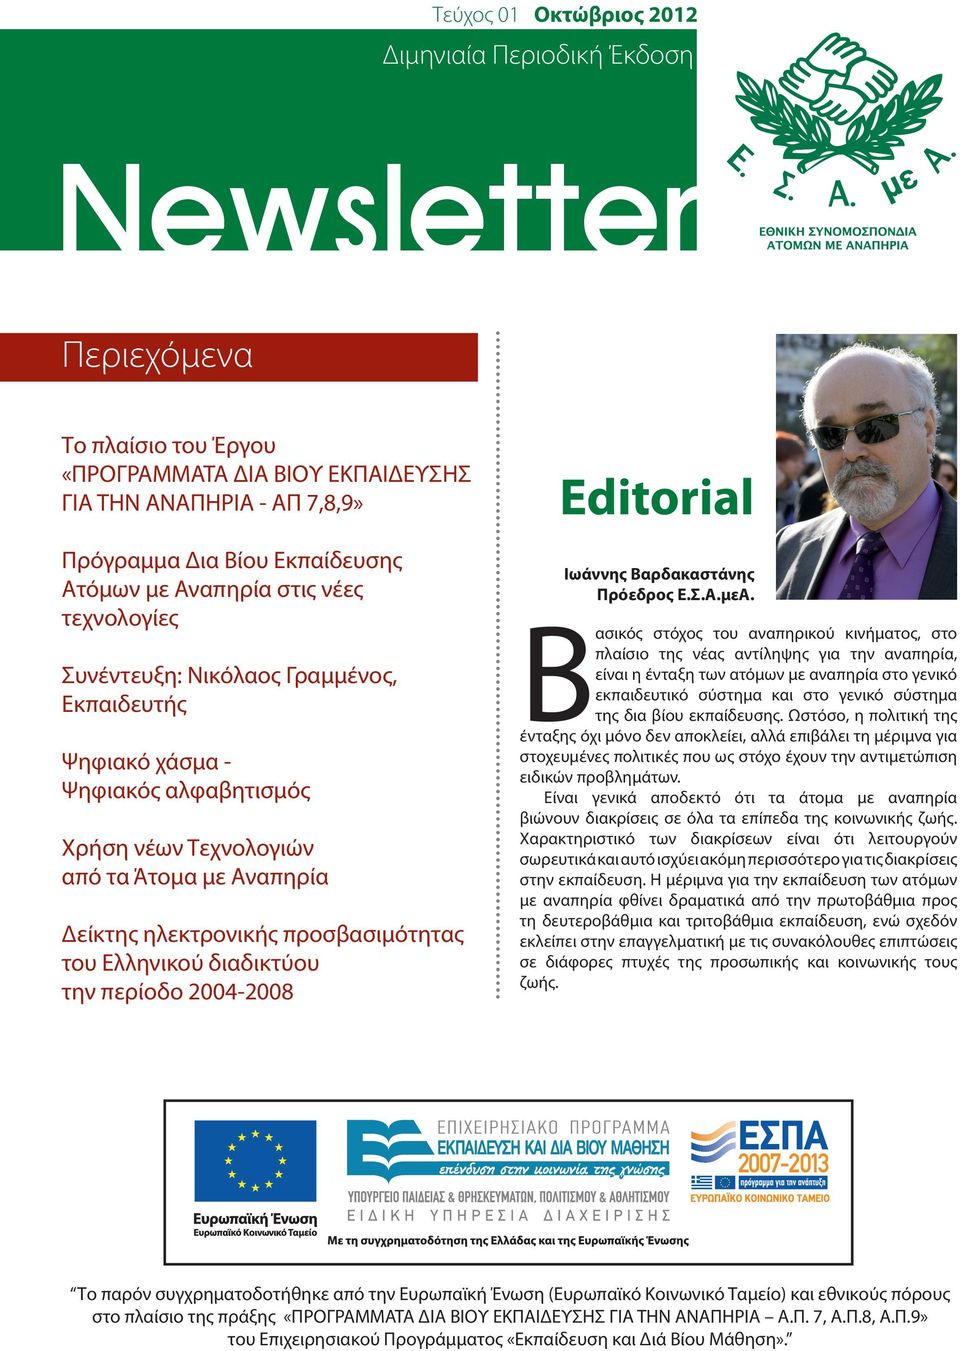 προσβασιμότητας του Ελληνικού διαδικτύου την περίοδο 2004-2008 Editorial Ιωάννης Βαρδακαστάνης Πρόεδρος Ε.Σ.Α.μεΑ.